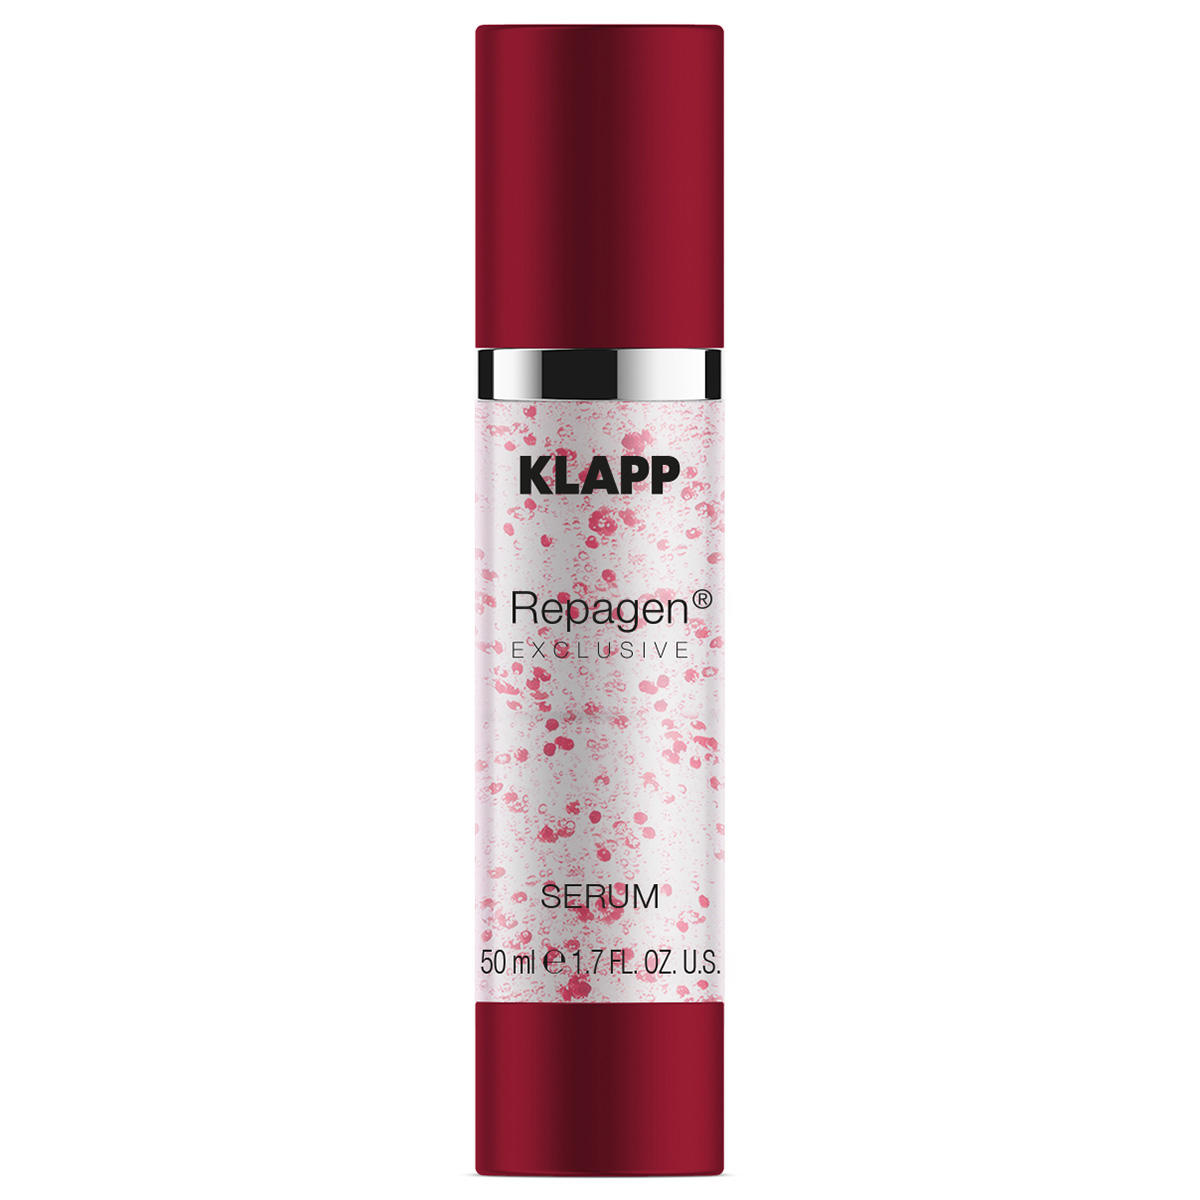 KLAPP REPAGEN EXCLUSIVE Sérum 50 ml - 1